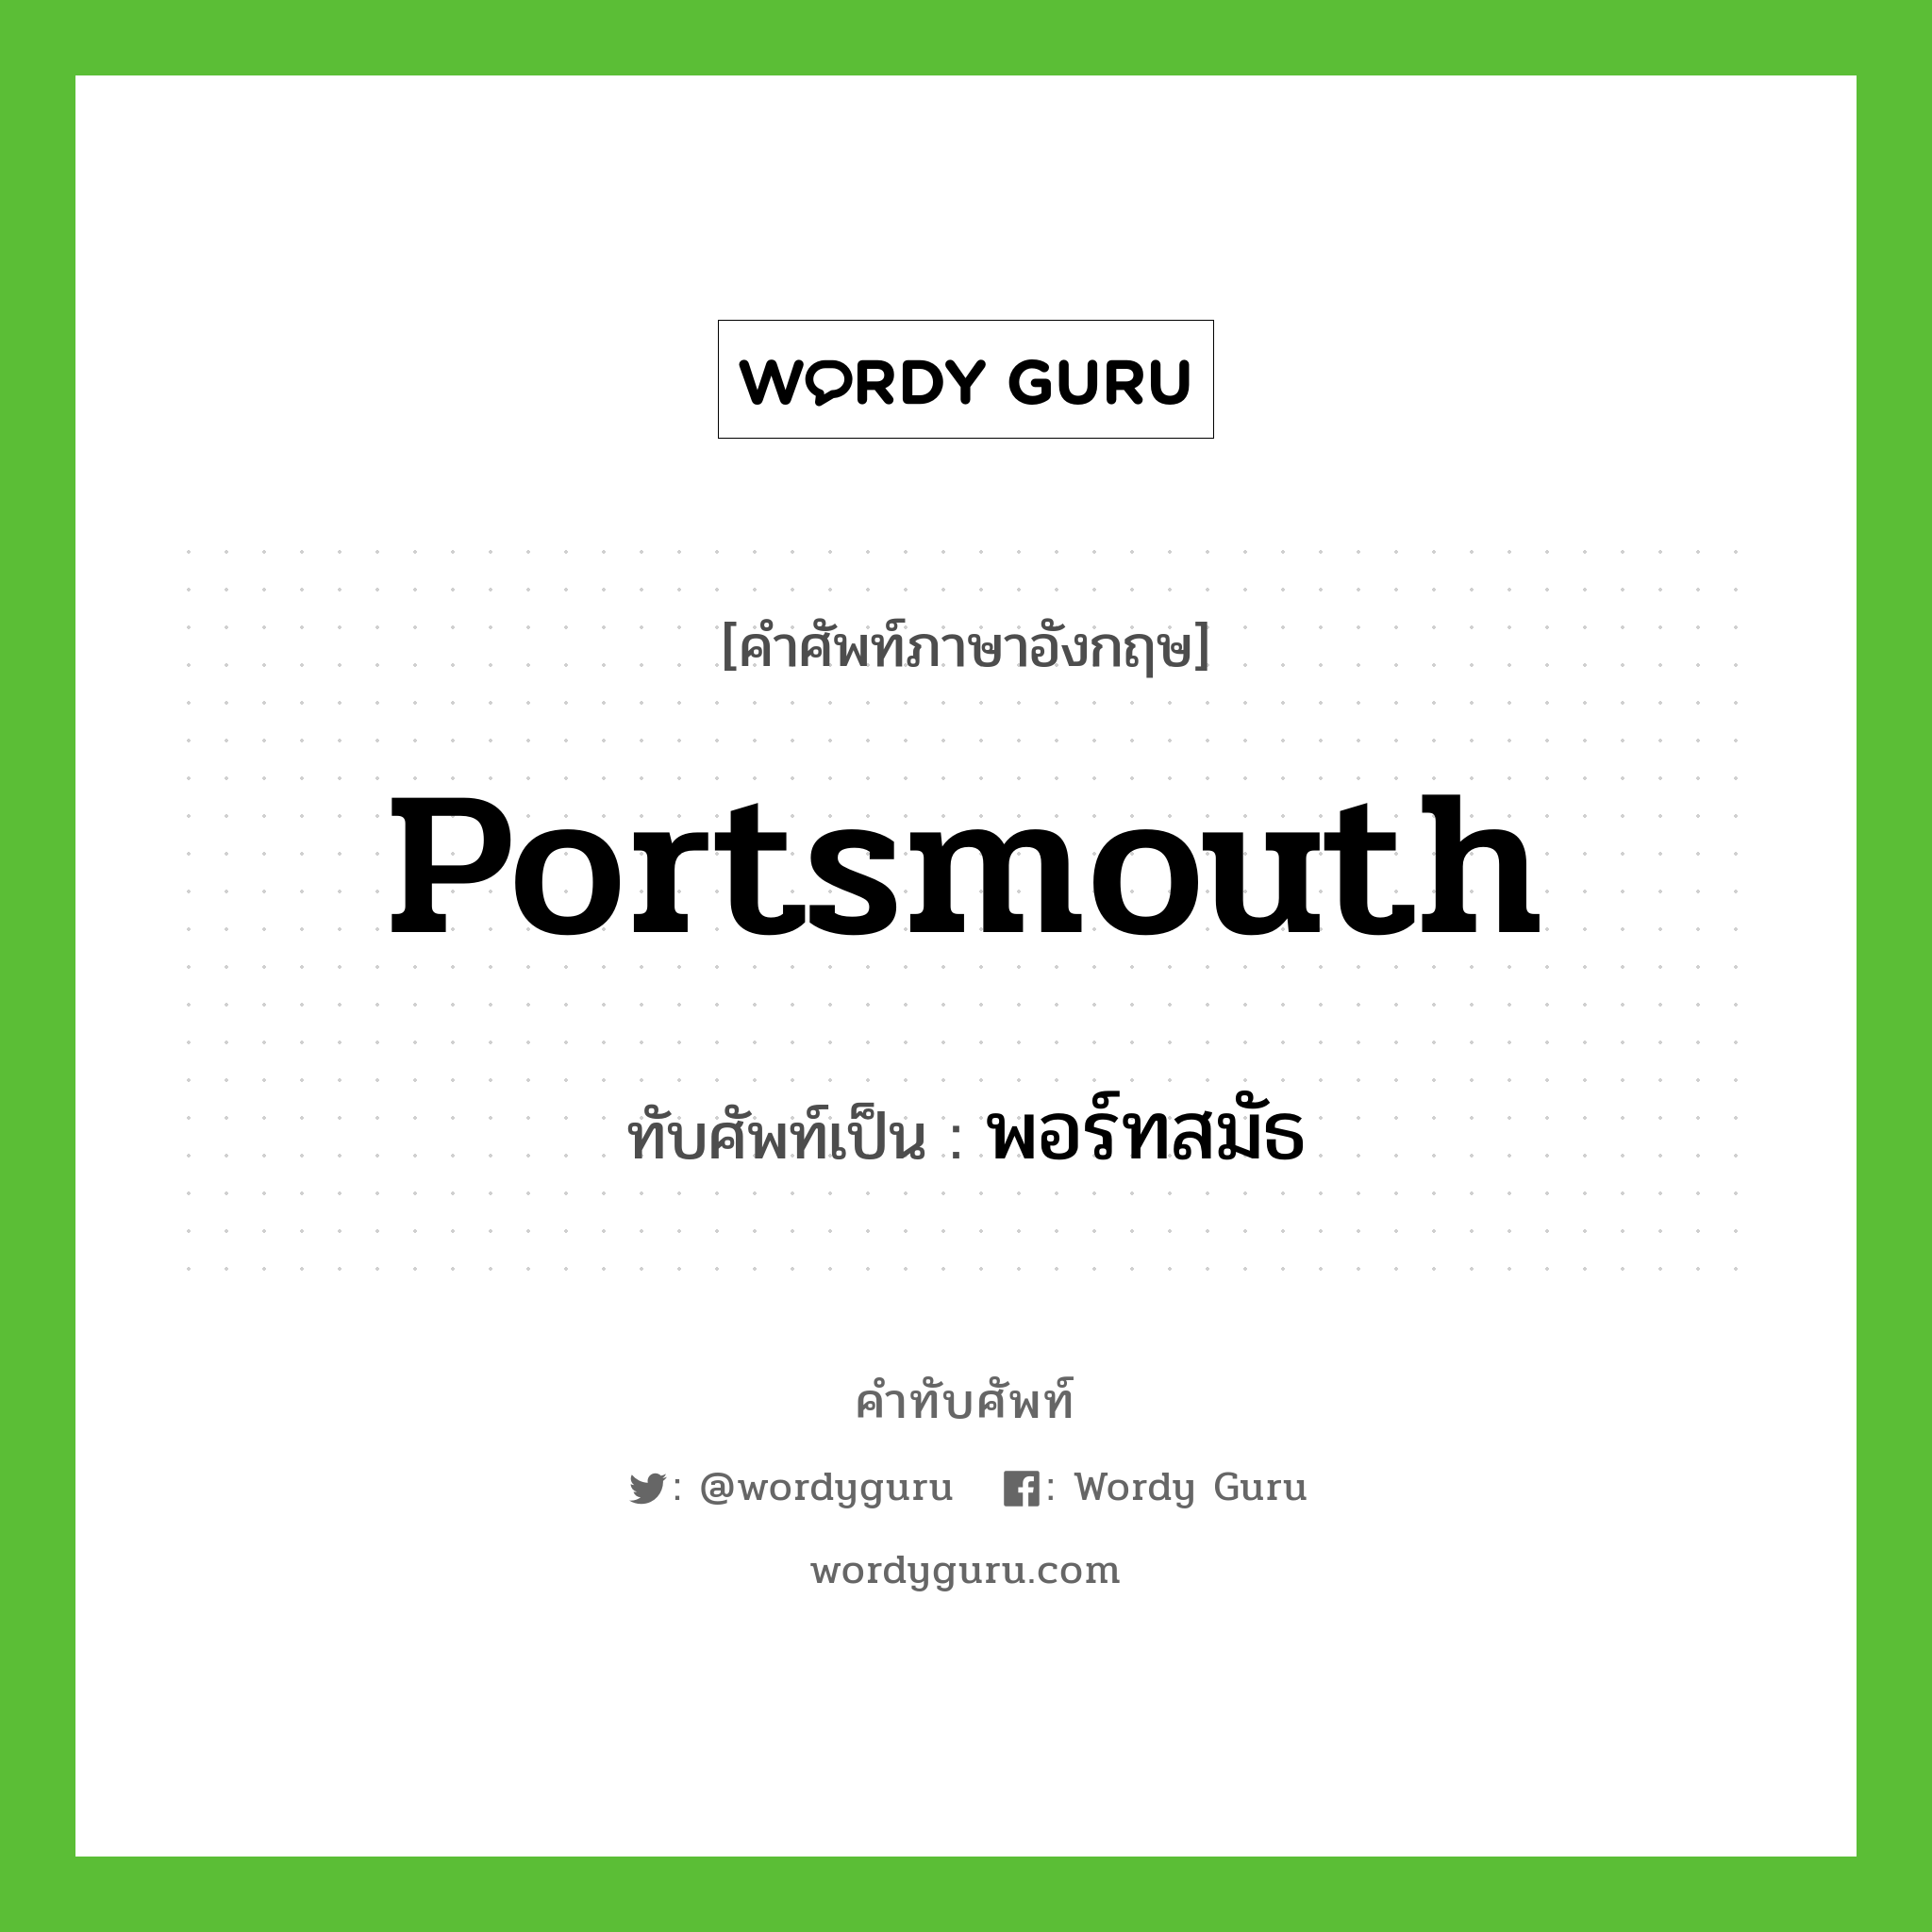 พอร์ทสมัธ เขียนอย่างไร?, คำศัพท์ภาษาอังกฤษ พอร์ทสมัธ ทับศัพท์เป็น Portsmouth